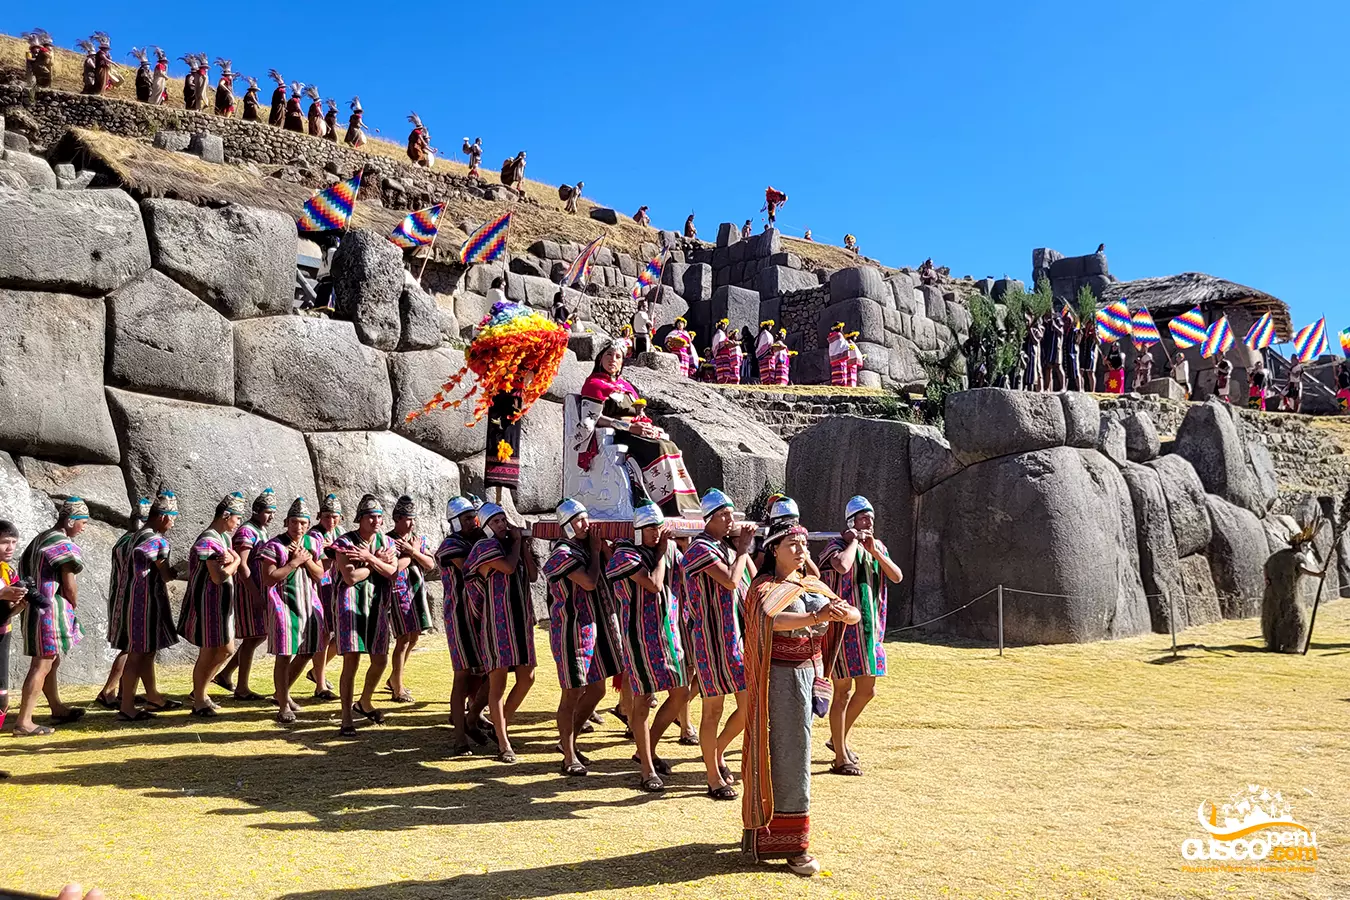 Tour Inti Raymi. Source: CuscoPeru.com